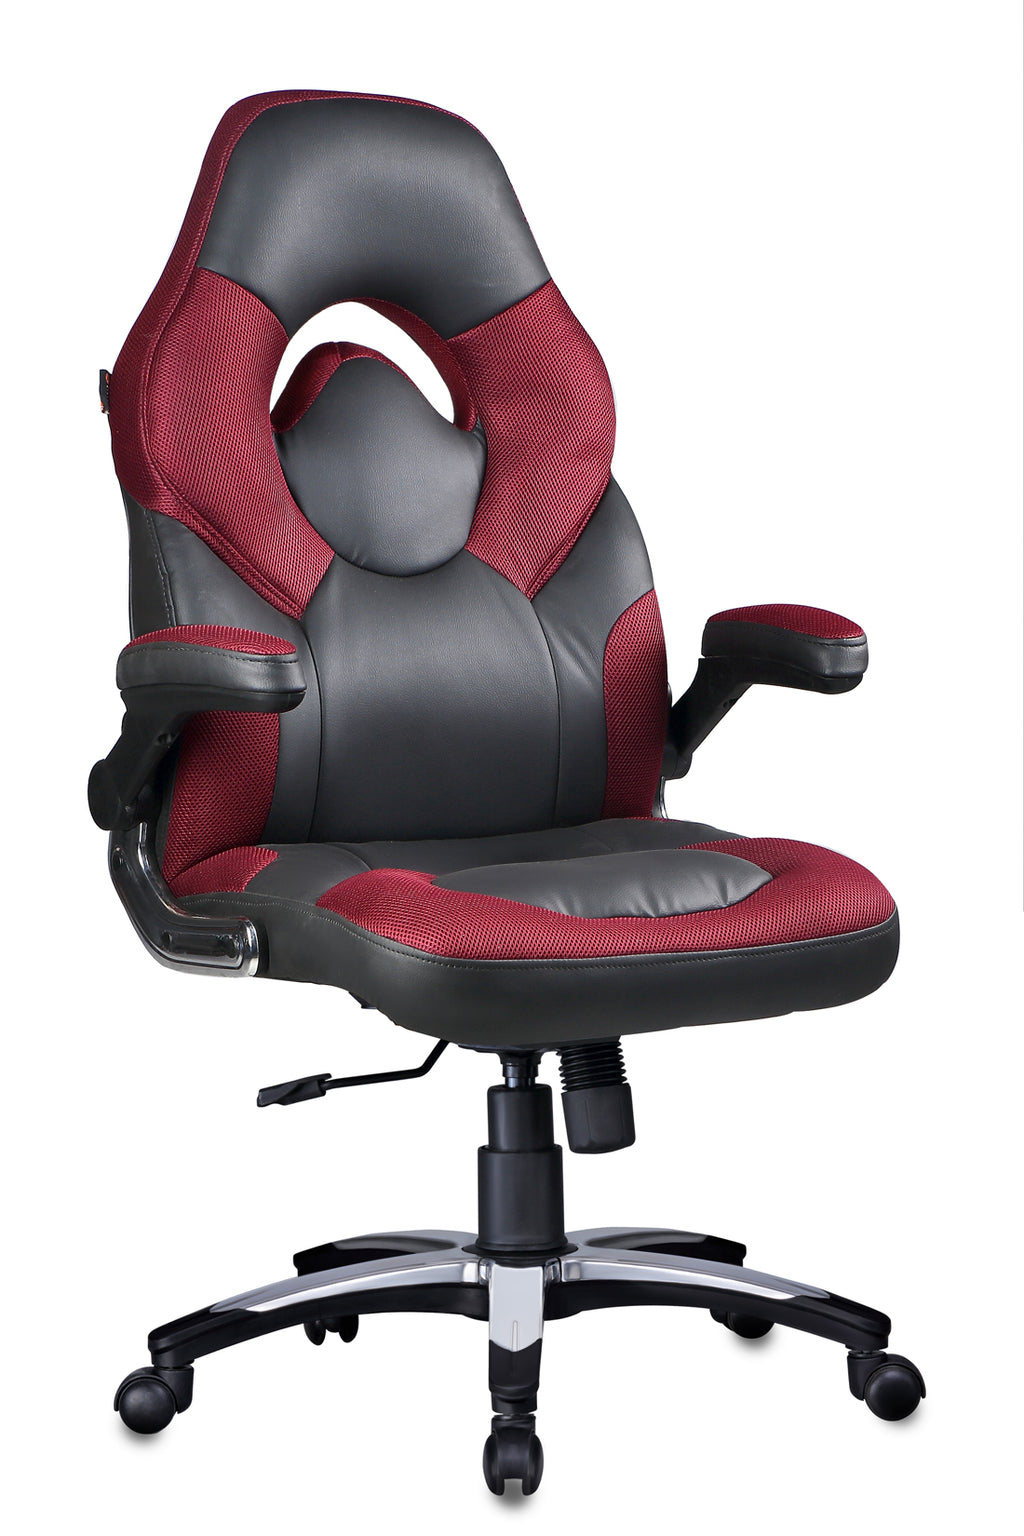 Detec™ Adiko Elegant Designer Gaming Chair In Maroon